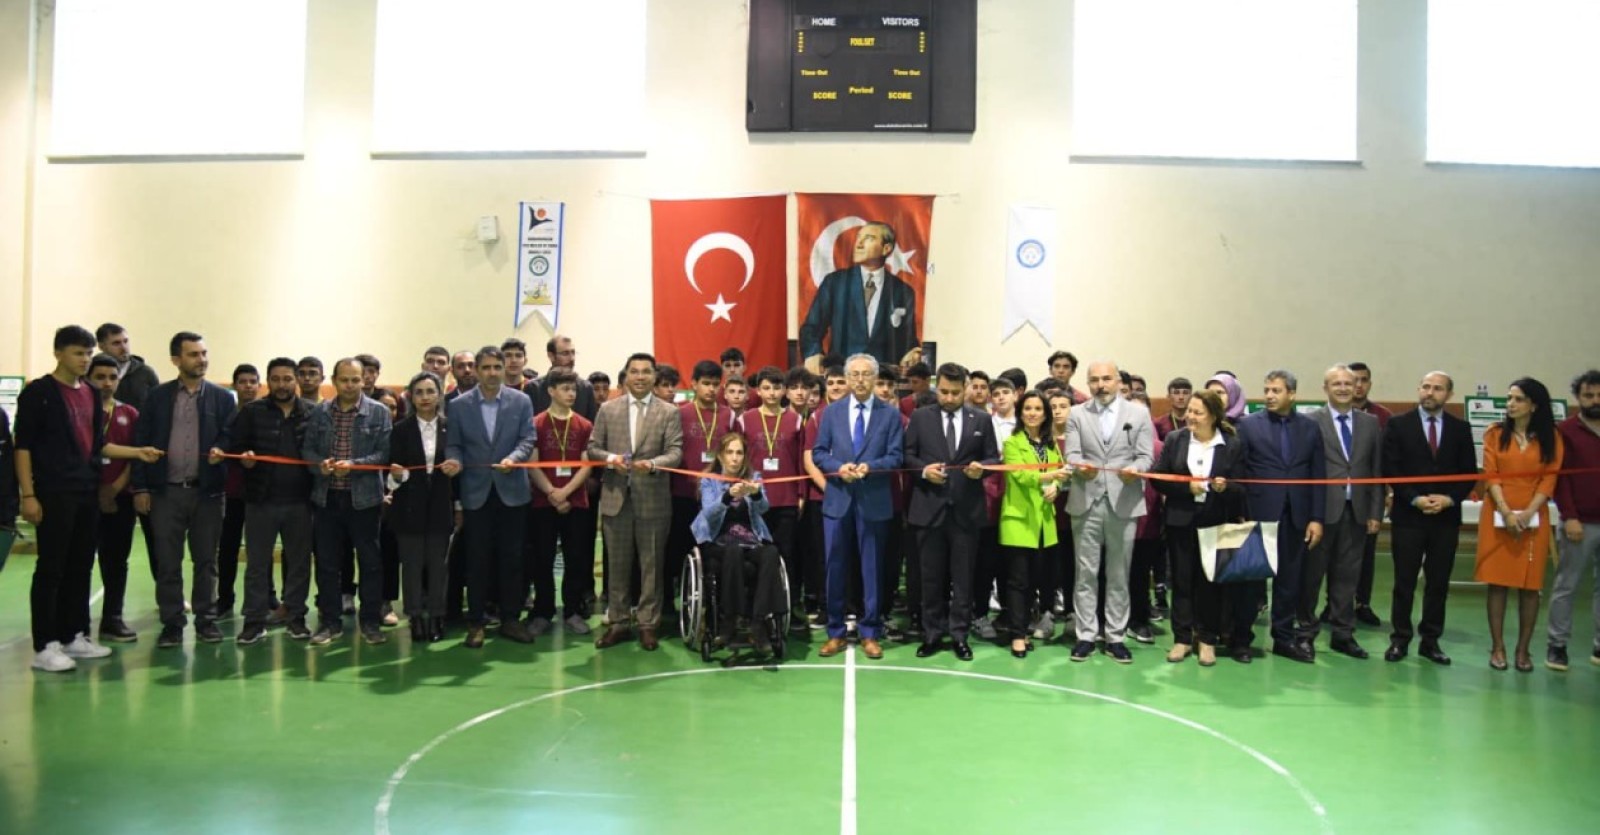 İlçe Kaymakamımız Abdullah Selim Parlar, Başkanımız Selim Çırpanoğlu ve İlçe Milli Eğitim Müdürümüz Kemal Yıldırım’ın katılımlarıyla 4006 Tubitak Bilim Fuarı açılışı gerçekleşti.